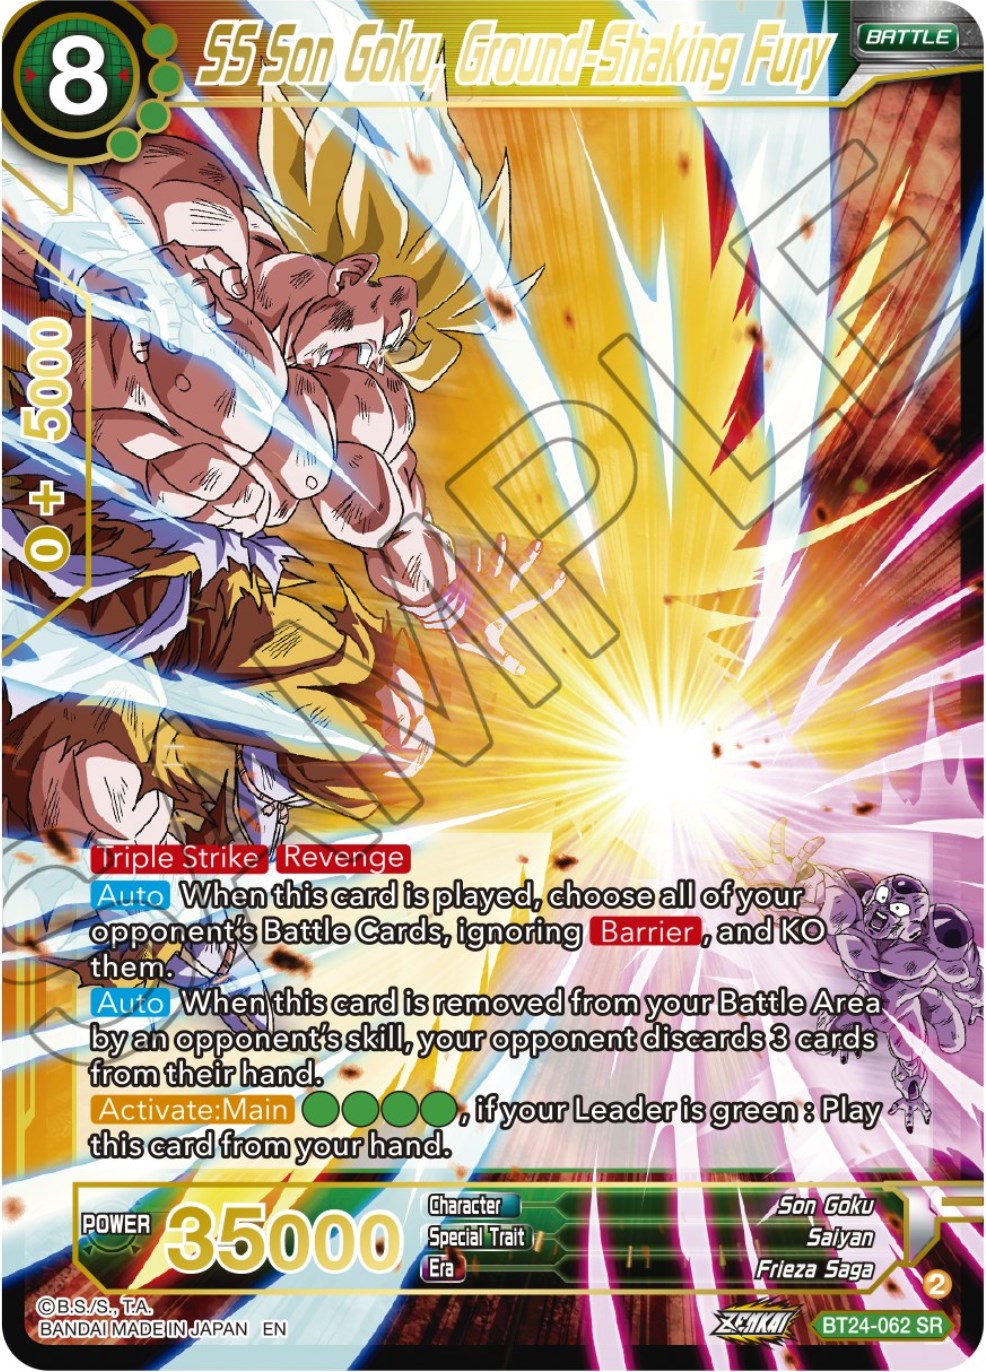 SS Son Goku, Ground-Shaking Fury (BT24-062) [Beyond Generations] | Pegasus Games WI